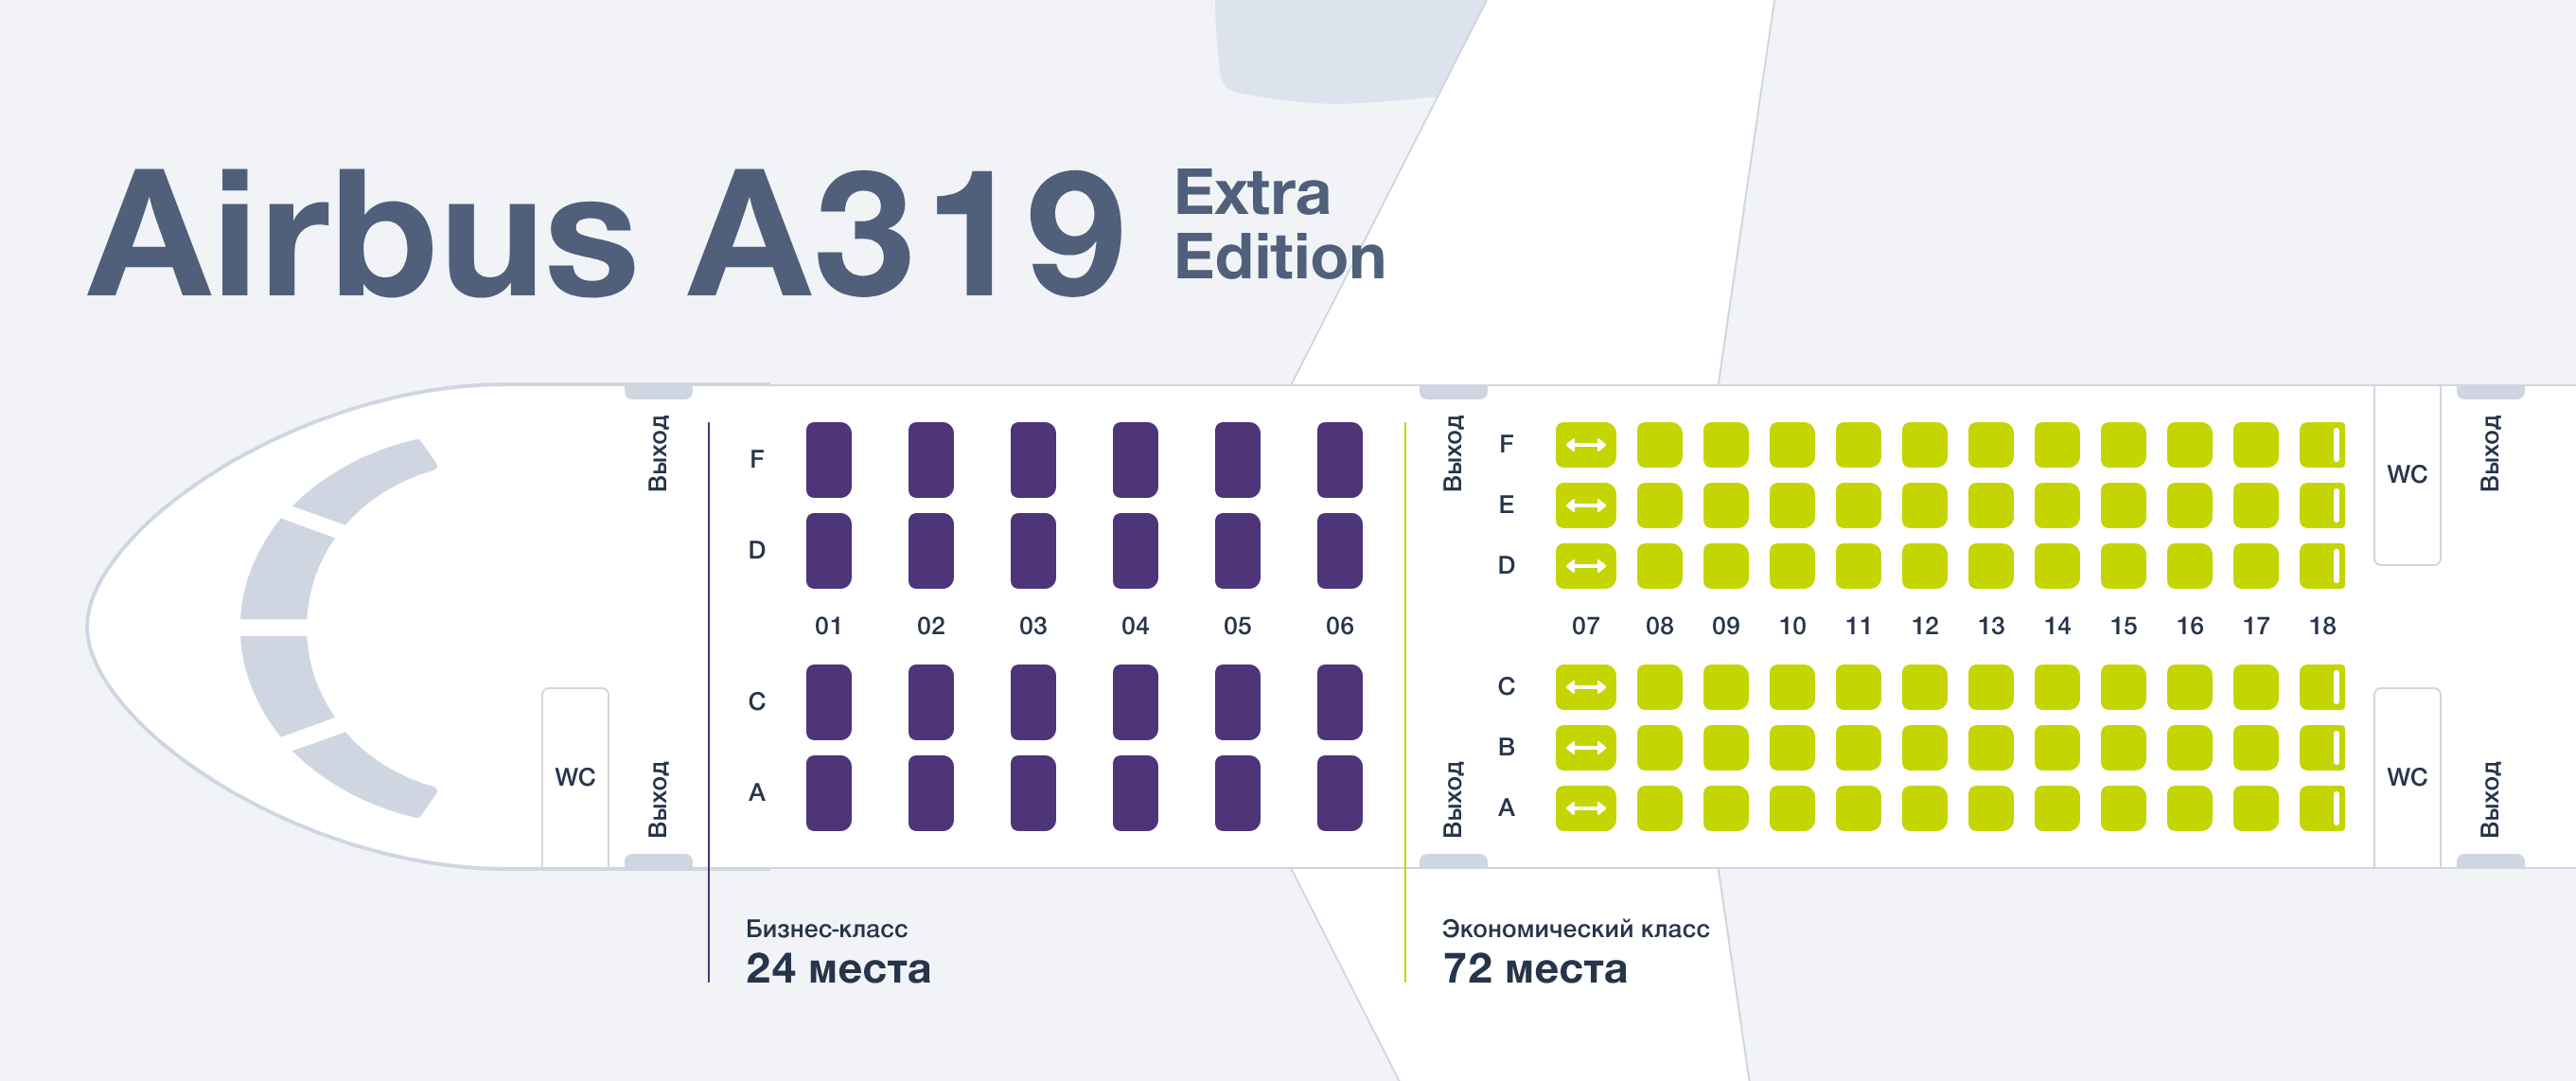 Аэробус а319 аэрофлот — схема салона и лучшие места